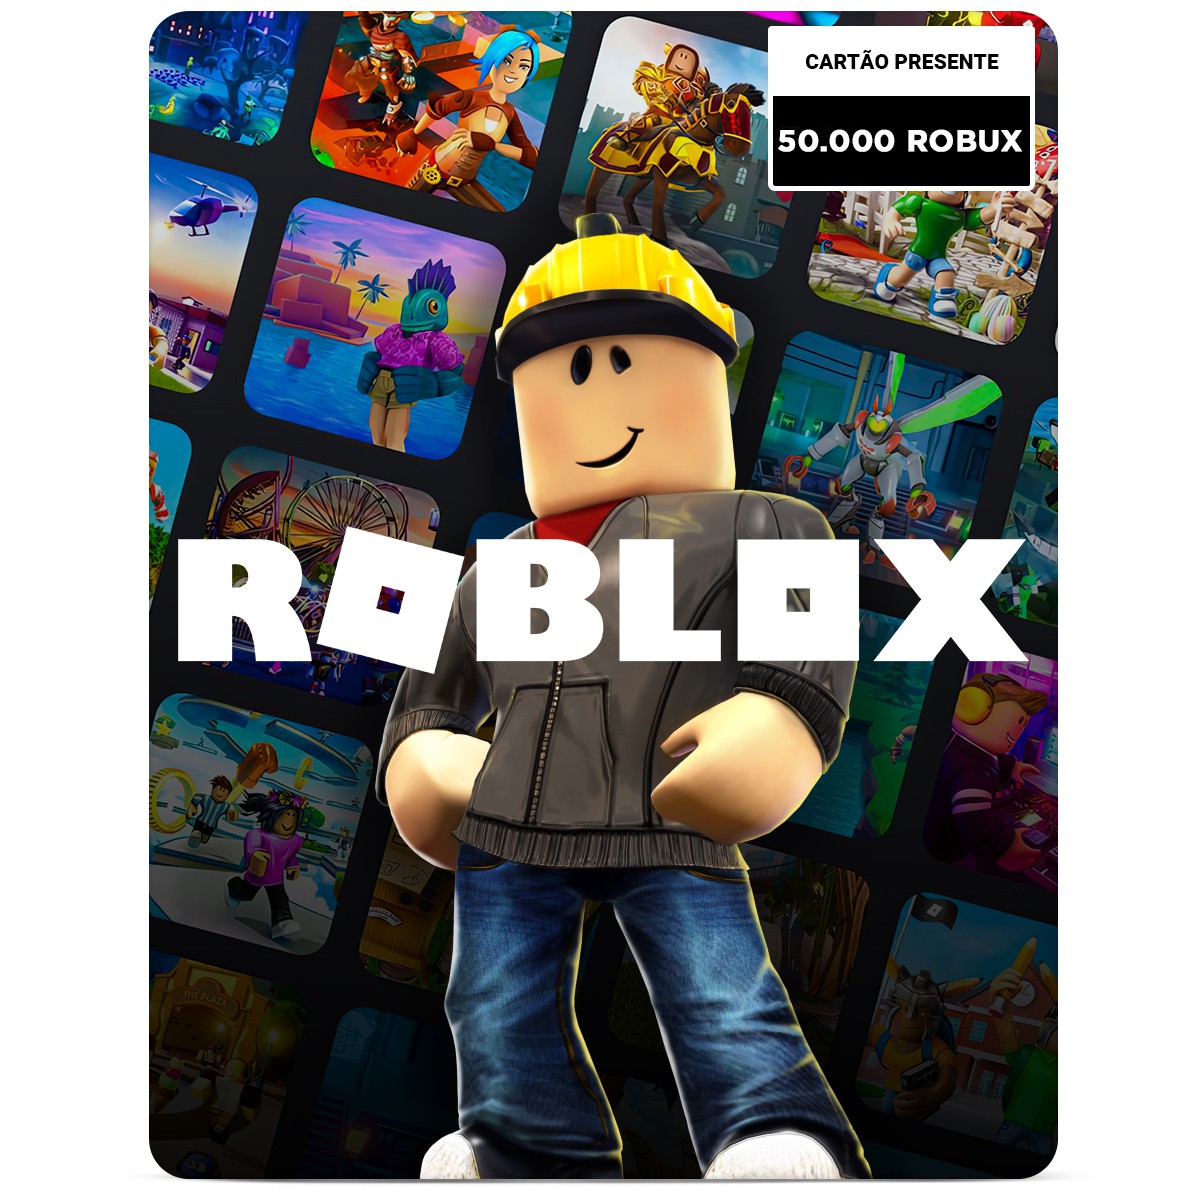 Desapego Games - Roblox > Conta de Roblox com ROBUX e muitos itens unisex